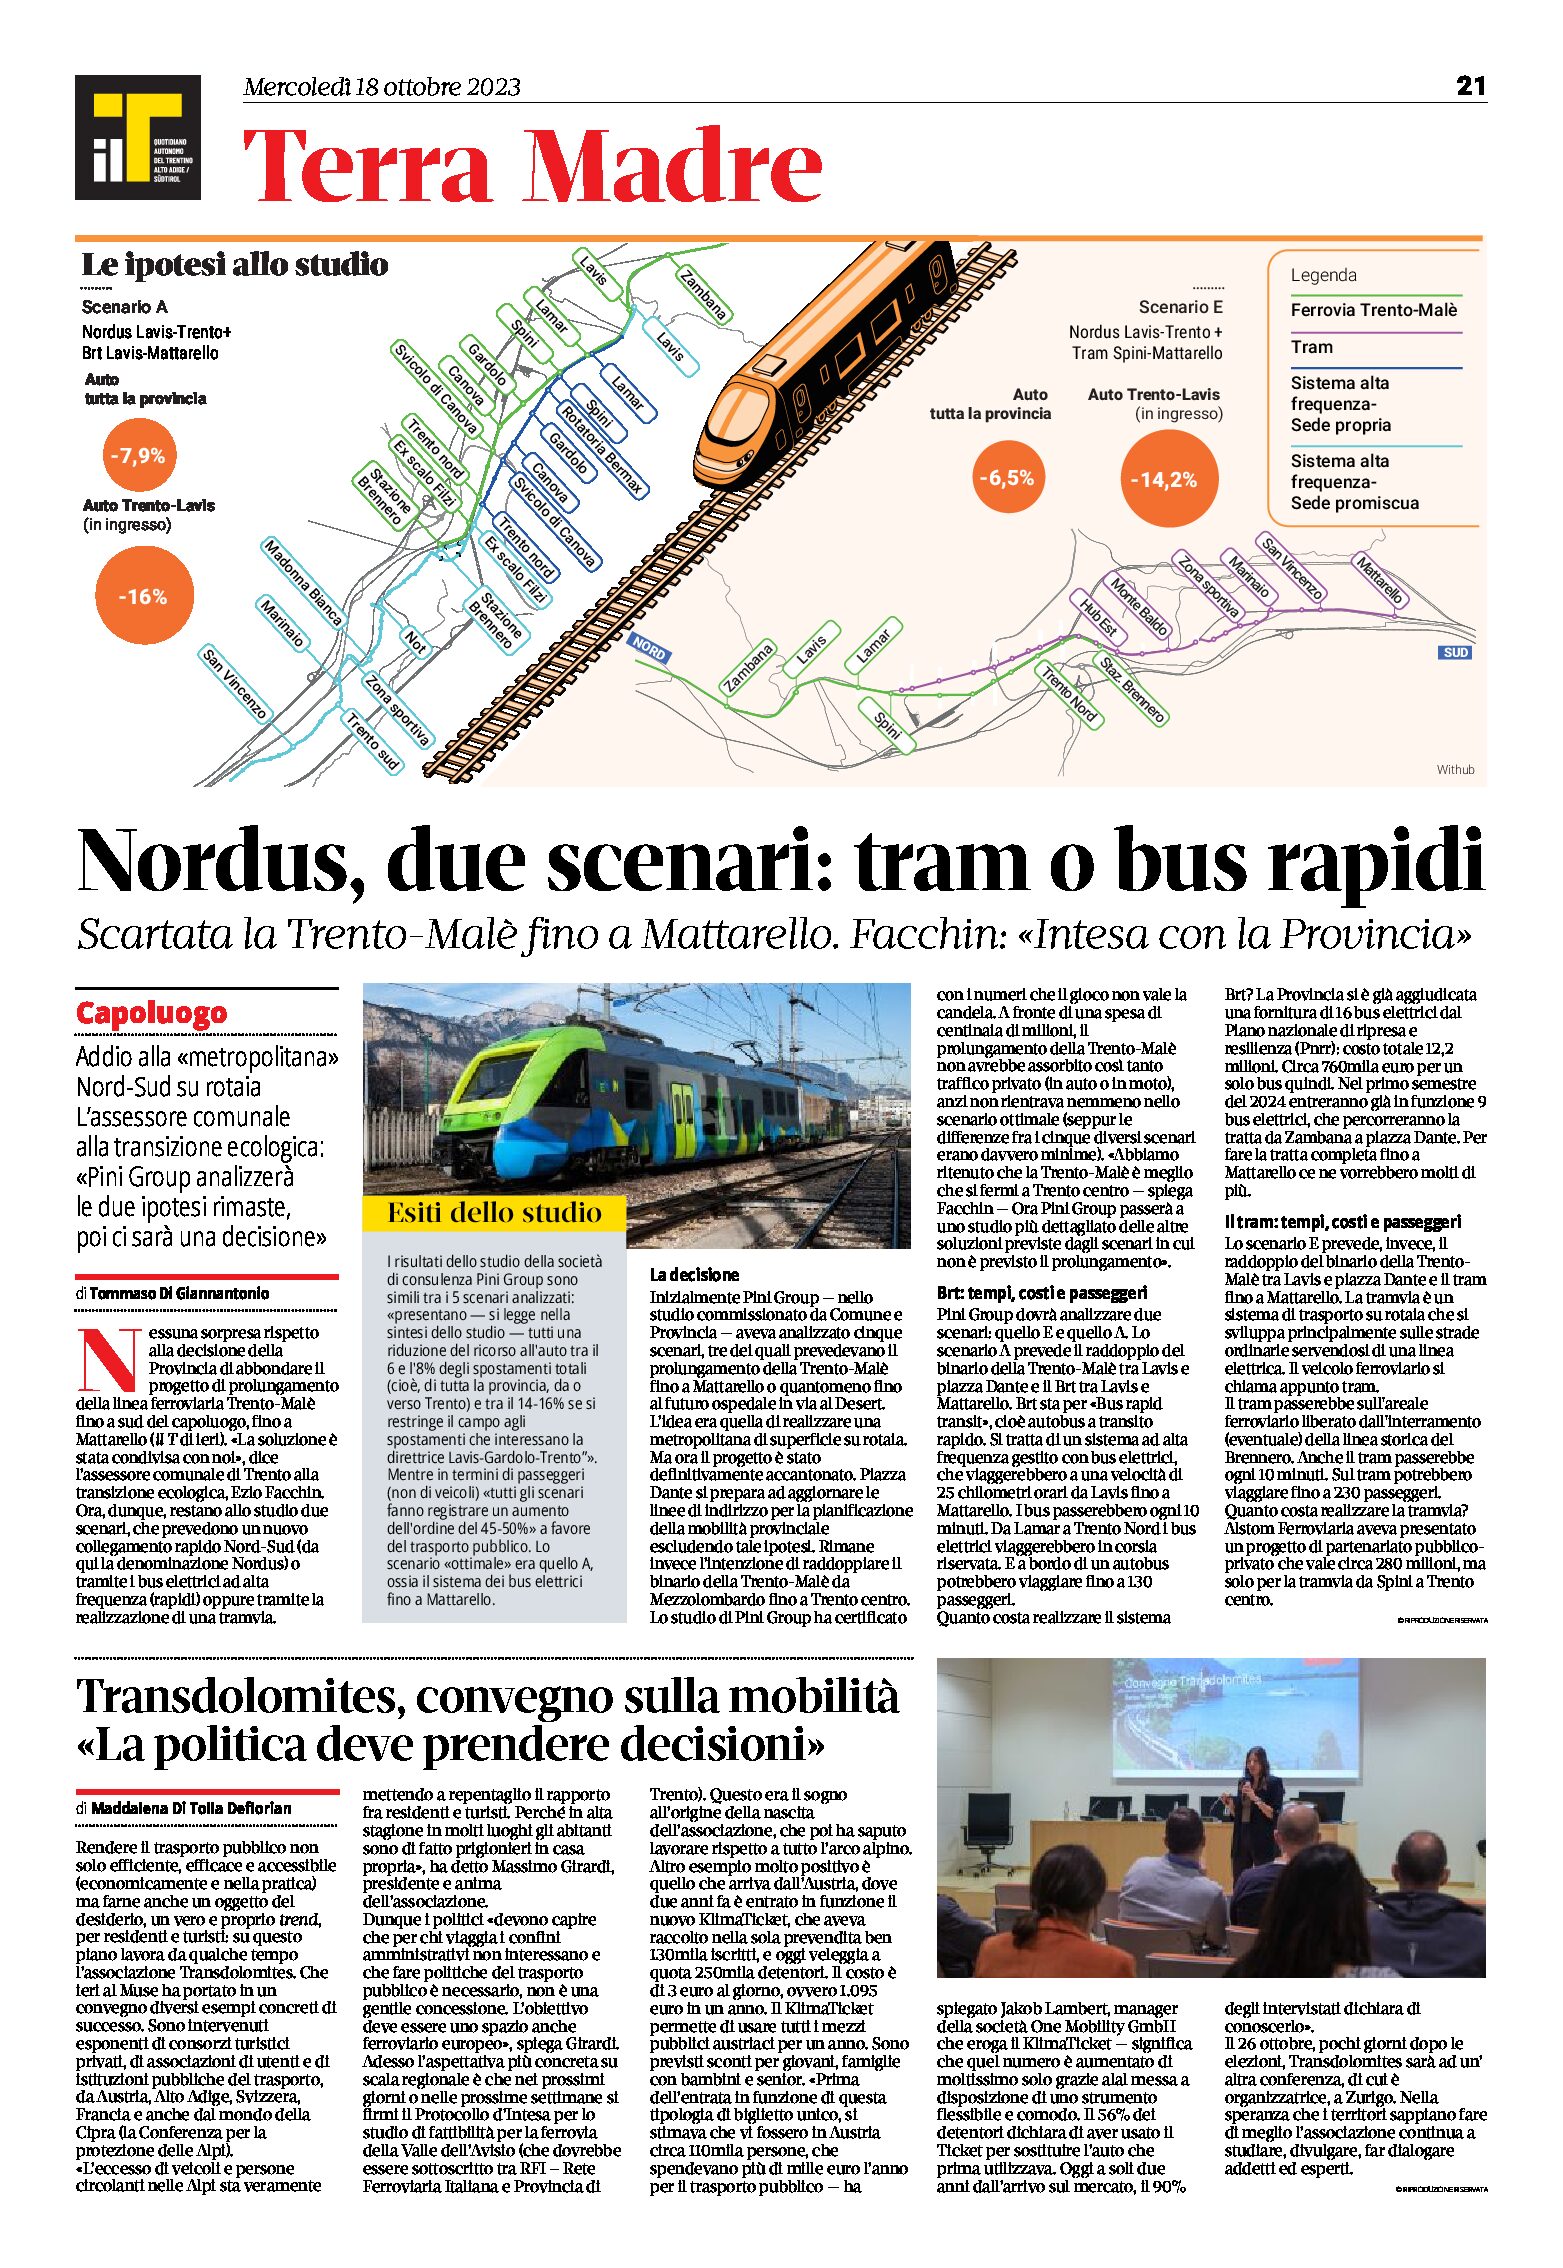 Nordus, due scenari: tram o bus rapidi. Scartata la Trento-Malè fino a Mattarello